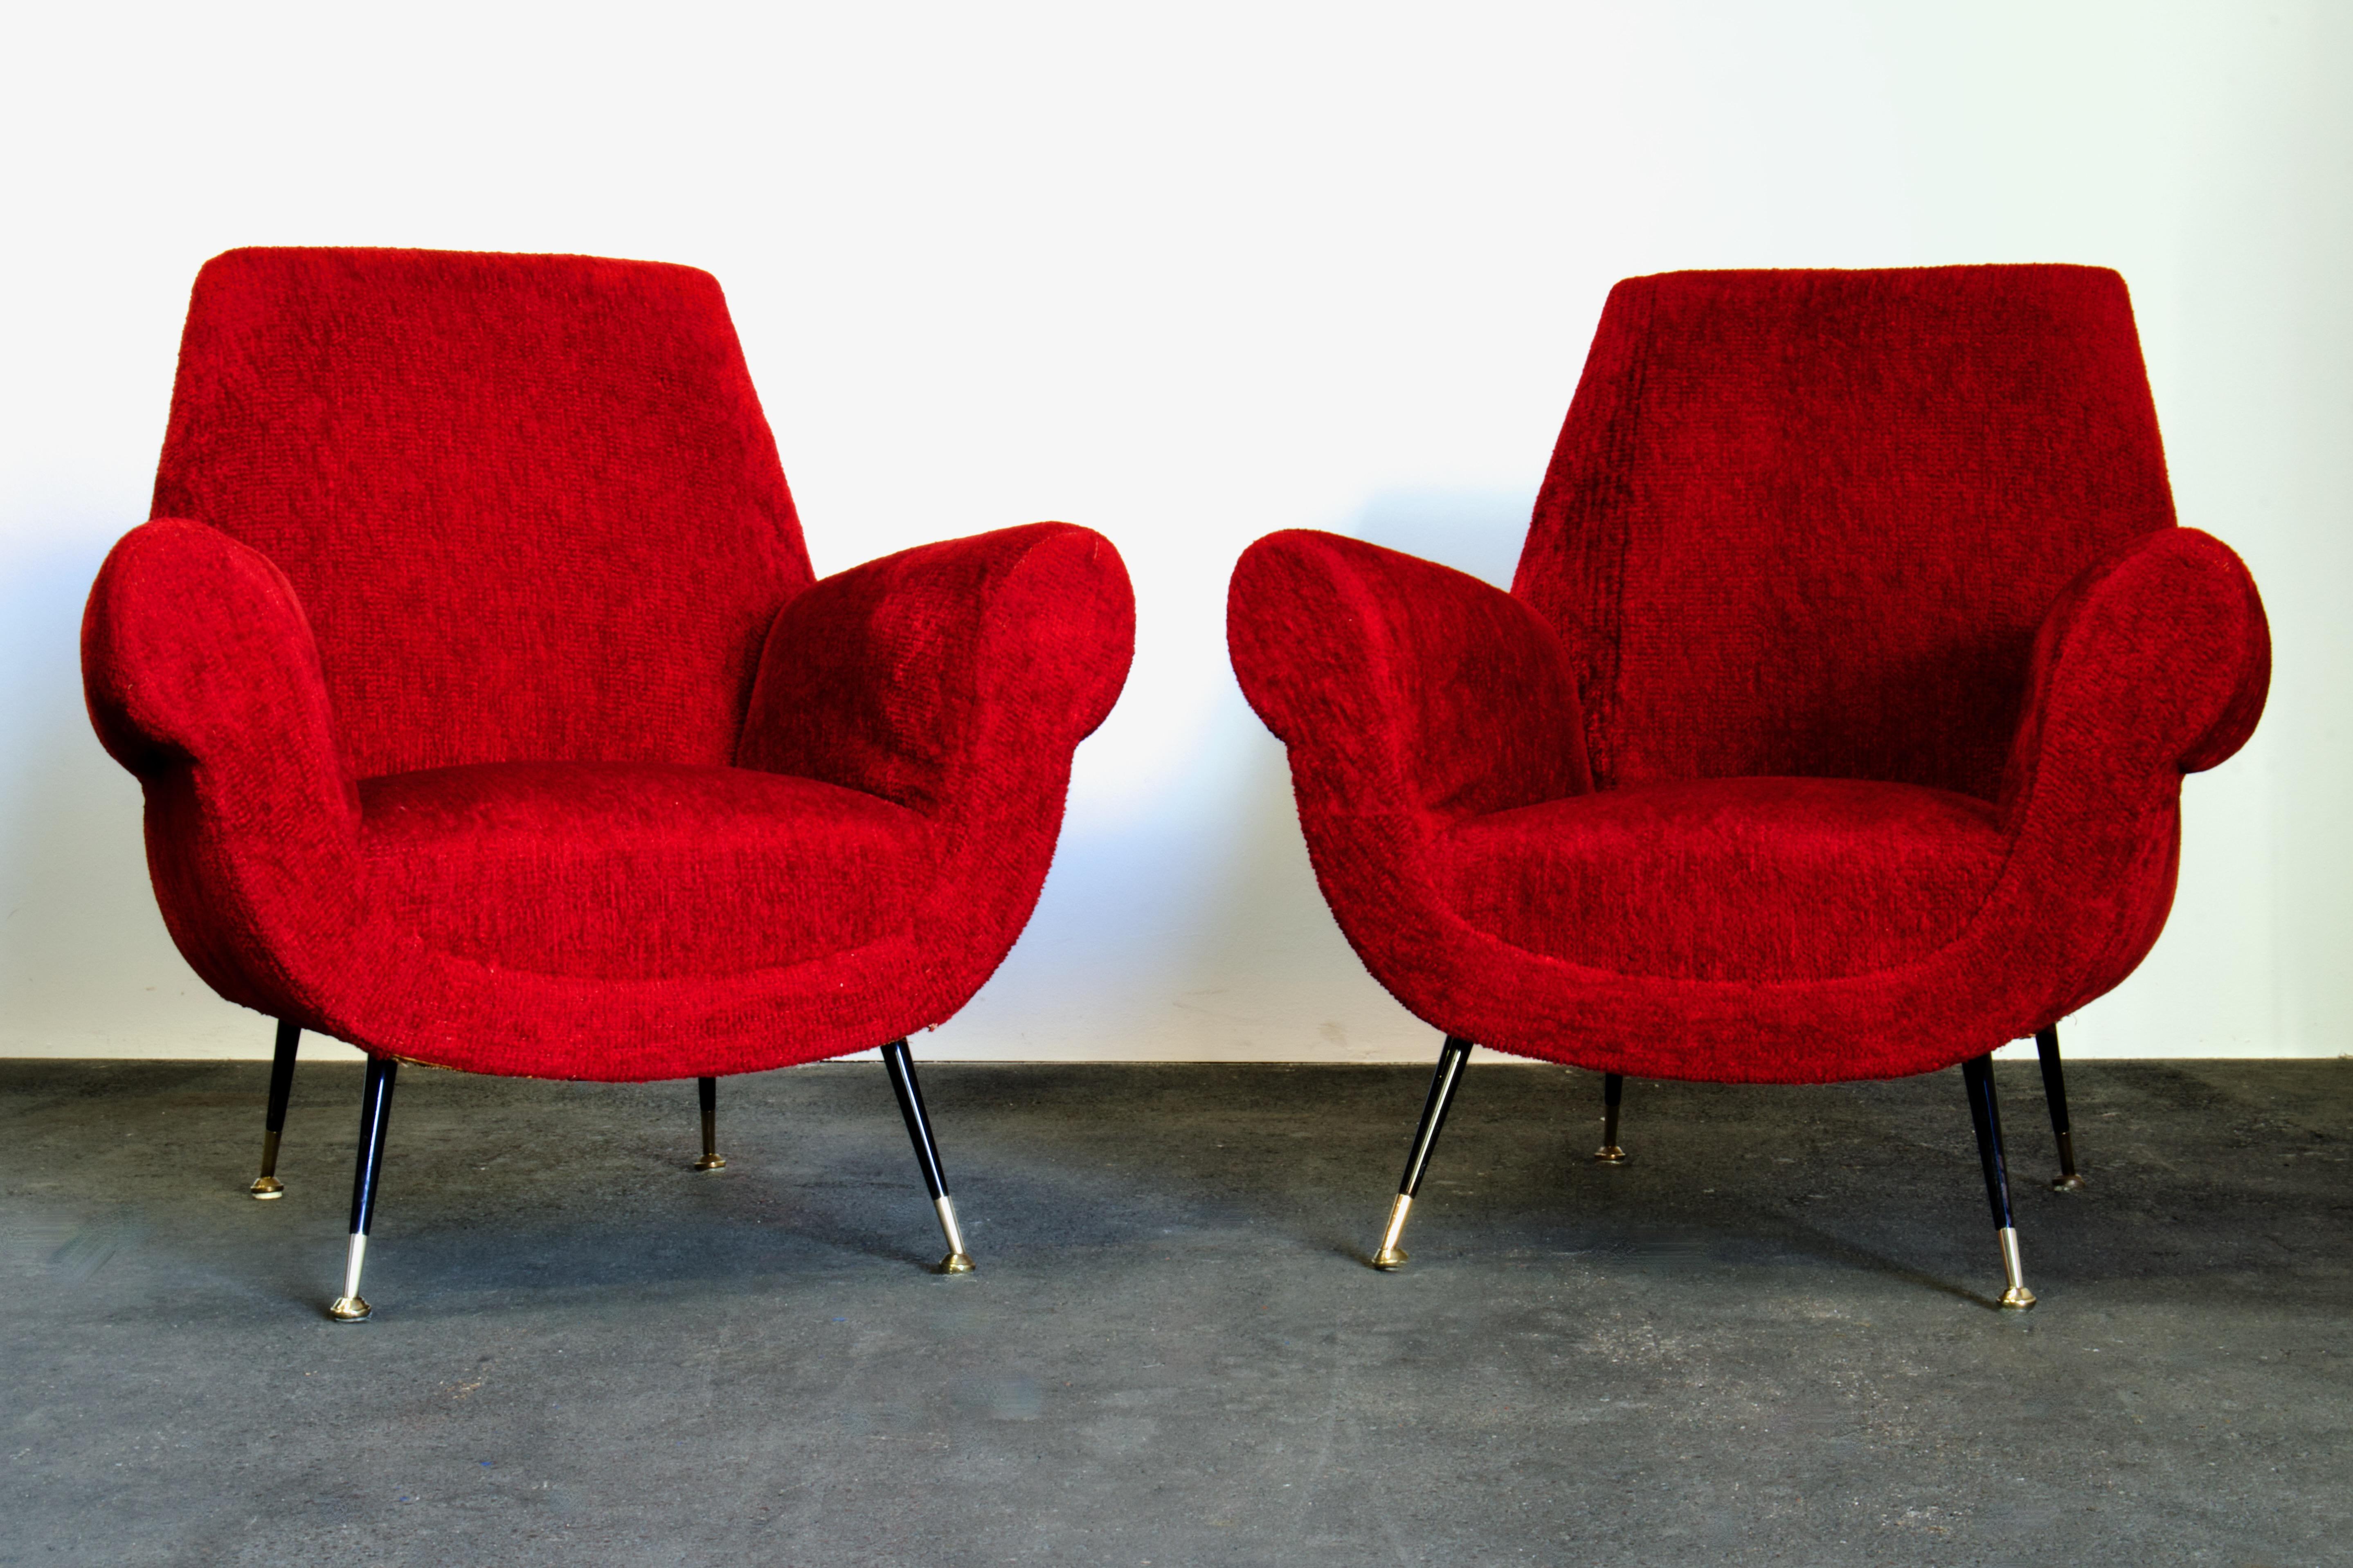 Paire de fauteuils italiens originaux de style moderne du milieu du siècle, conçus par Luigi (Gigi) Radice pour Minotti, Italie, dans les années 1950. Ce modèle, qui a défini une période importante du design italien, évoque les modèles contemporains